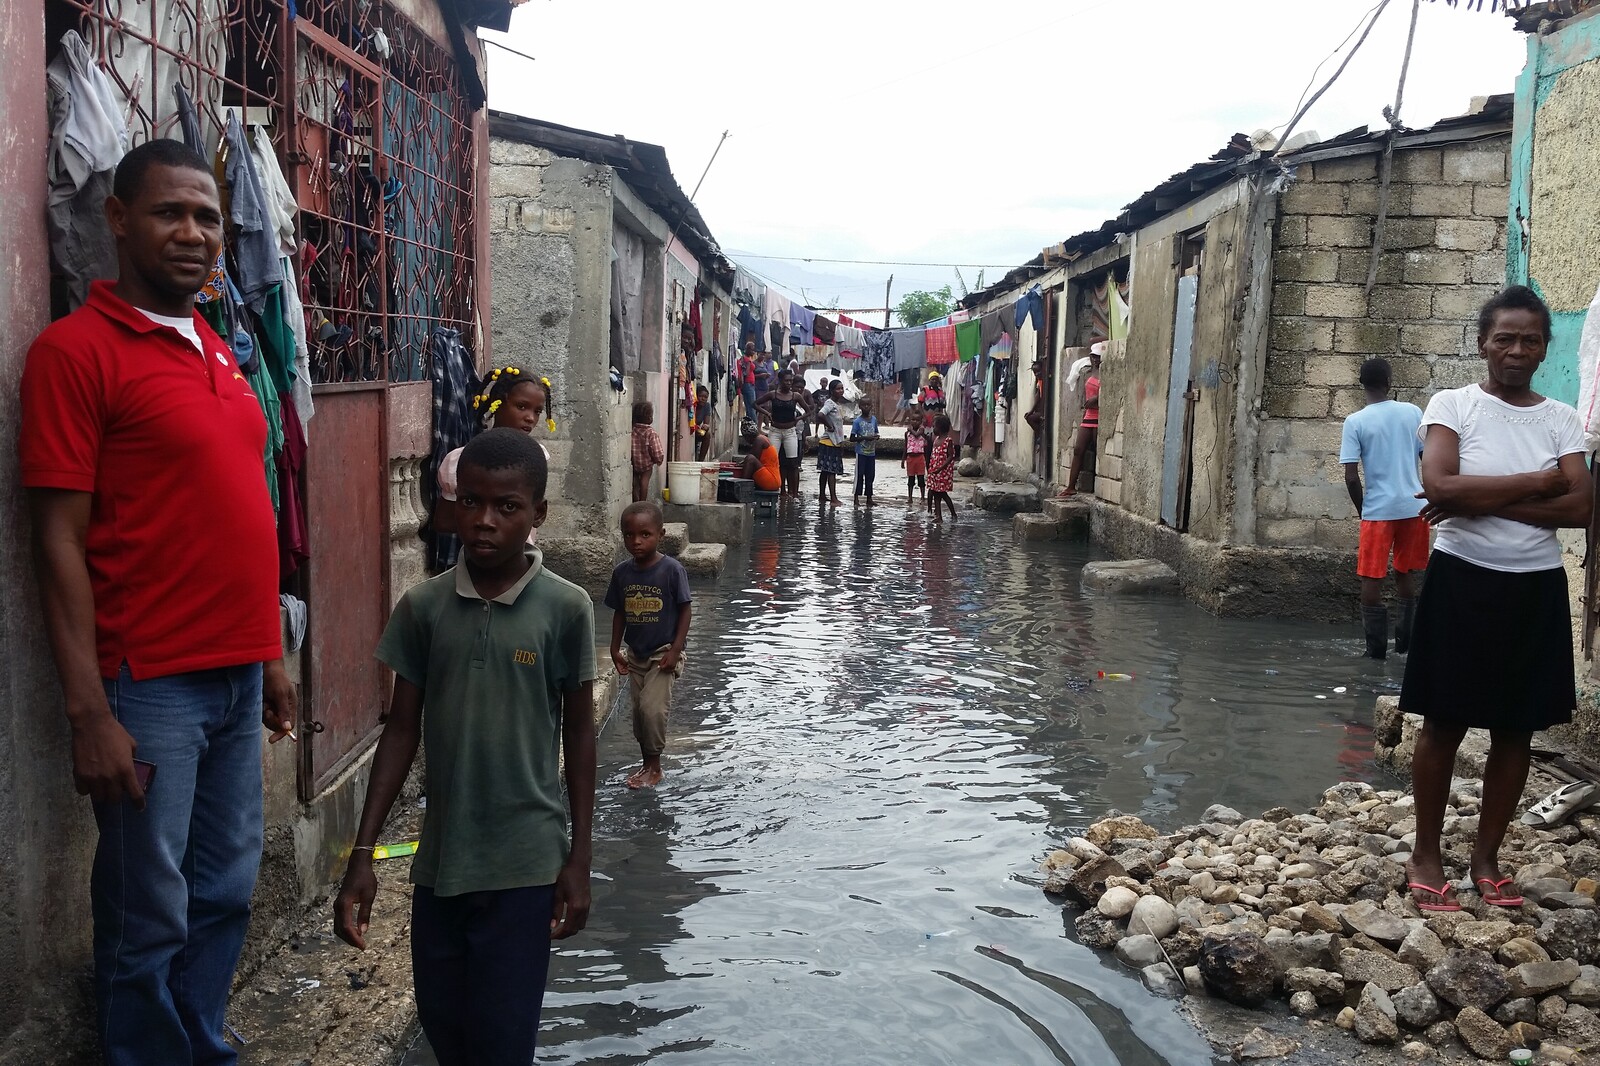 Nach dem Hurrikan Matthew in der Karibik stehen in Haiti viele Straßen unter Wasser. Durch das warme Klima vermehren sich Mücken rasch.